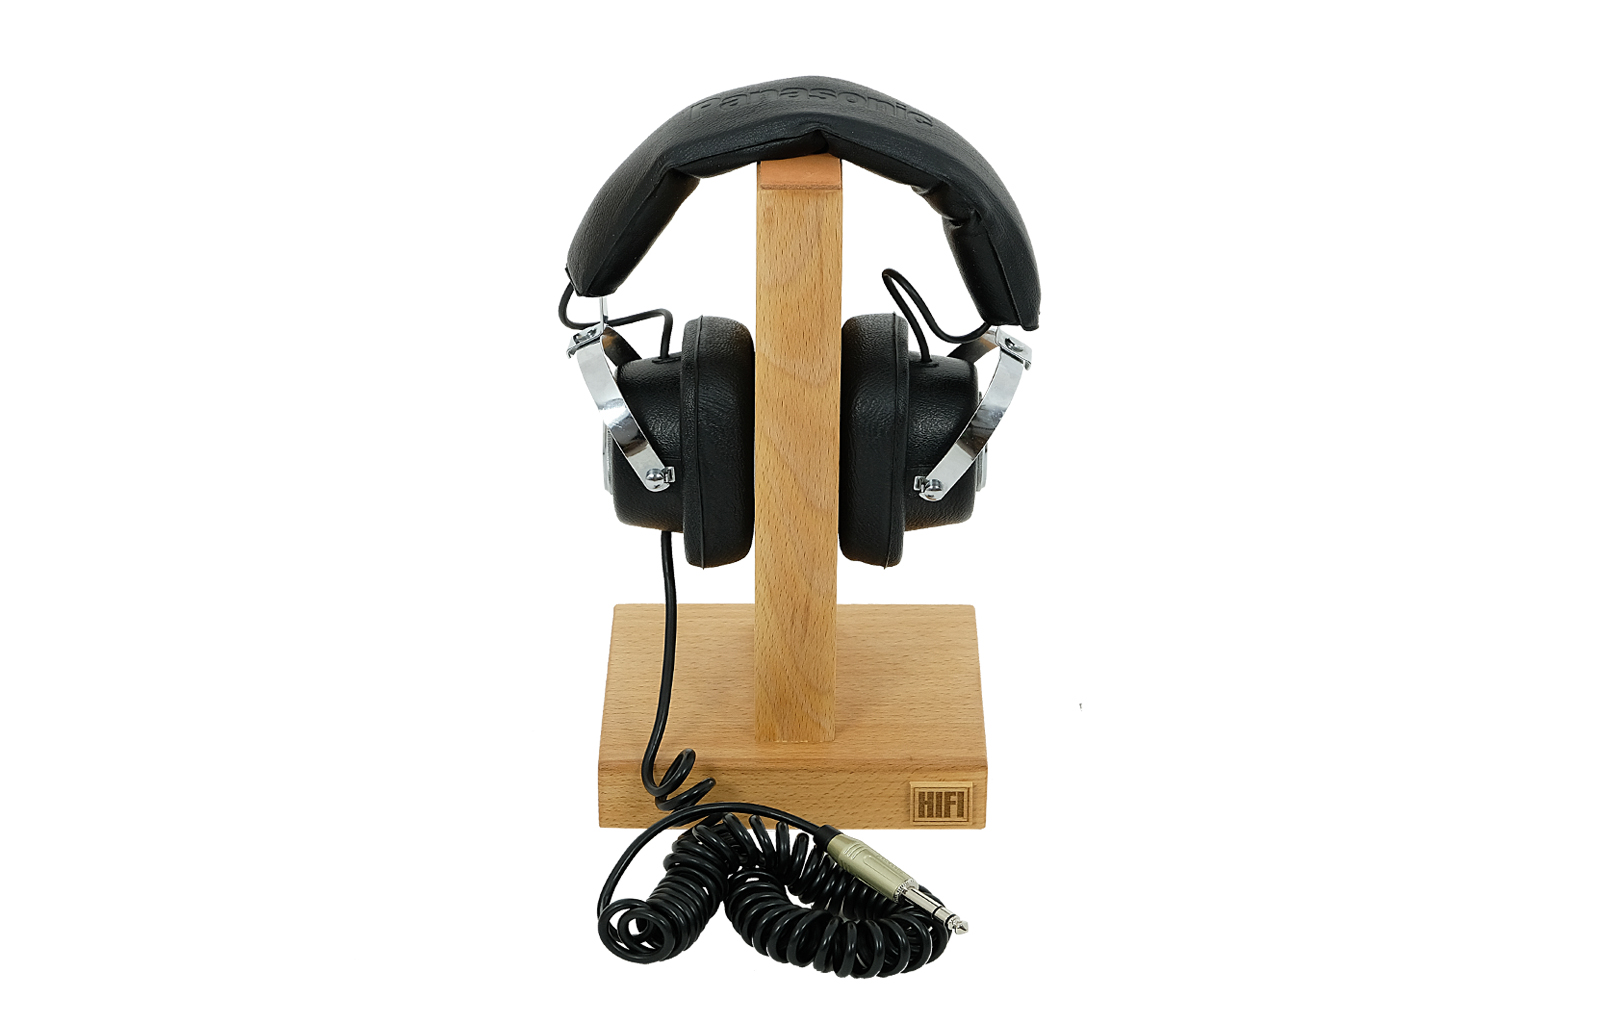 Panasonic EAH-20 headphones